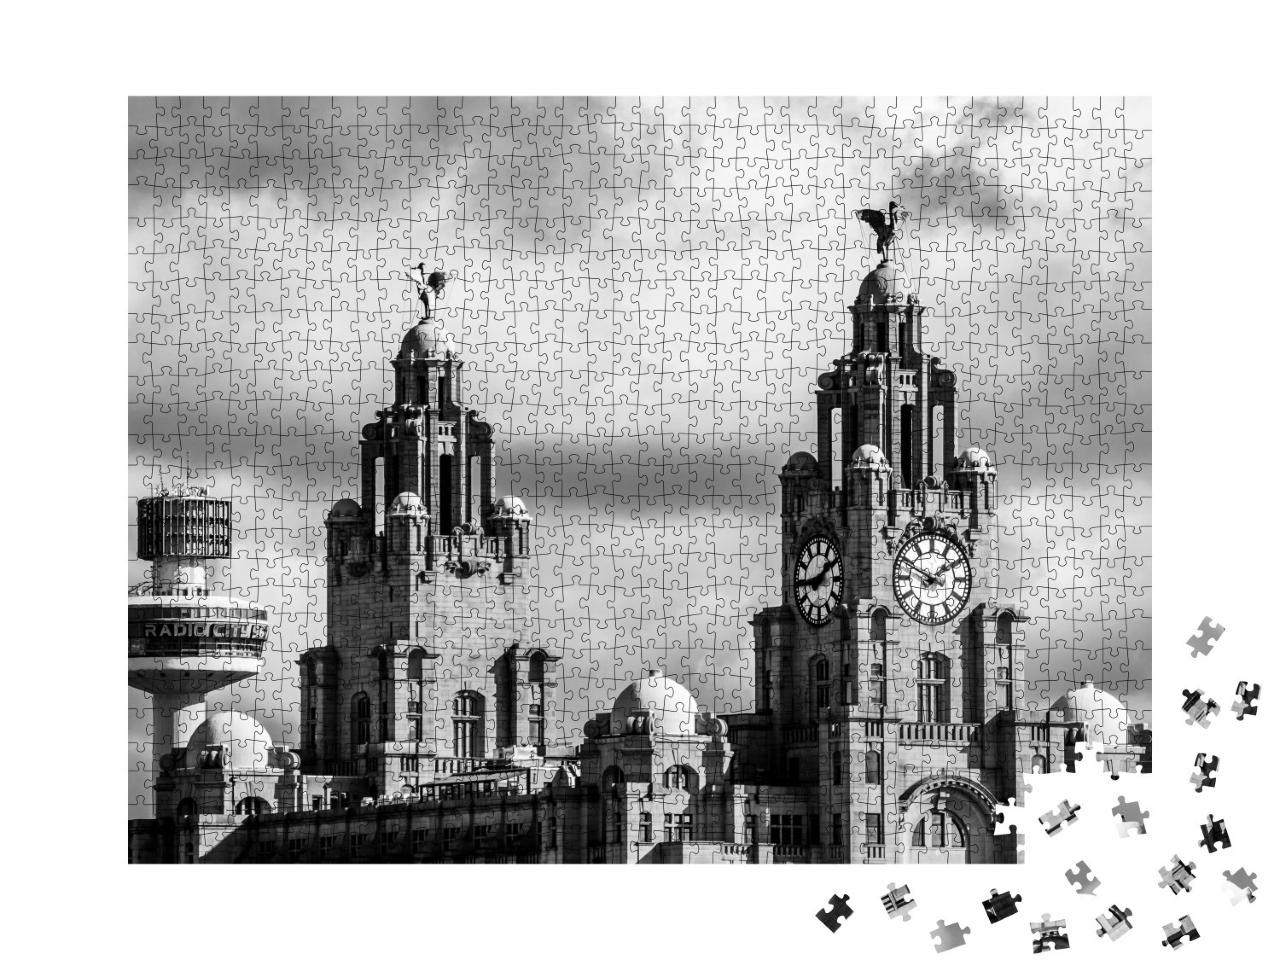 Puzzle de 1000 pièces « Vue sur le Royal Liver Building à Liverpool »